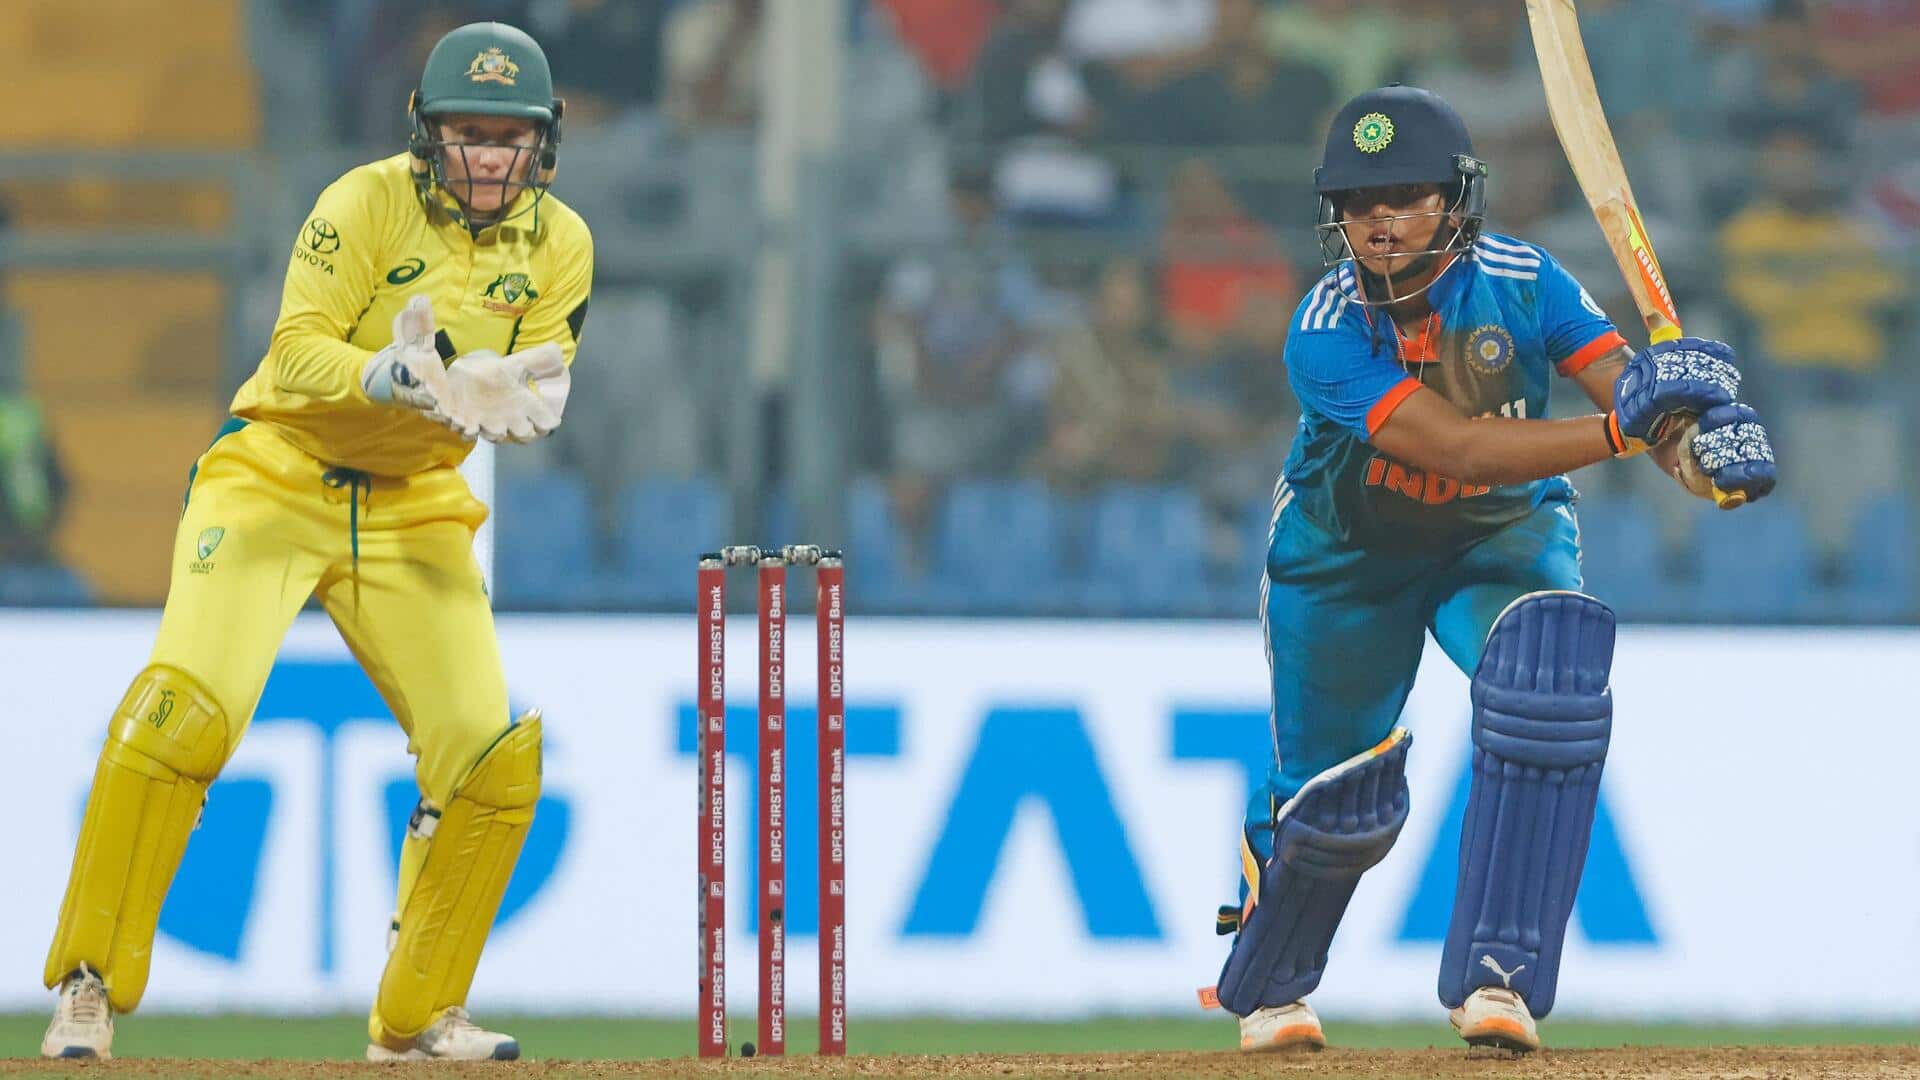 महिला क्रिकेट, भारत बनाम ऑस्ट्रेलिया: ऋचा घोष ने बनाया वनडे करियर का सर्वोच्च स्कोर, जानिए आंकड़े 